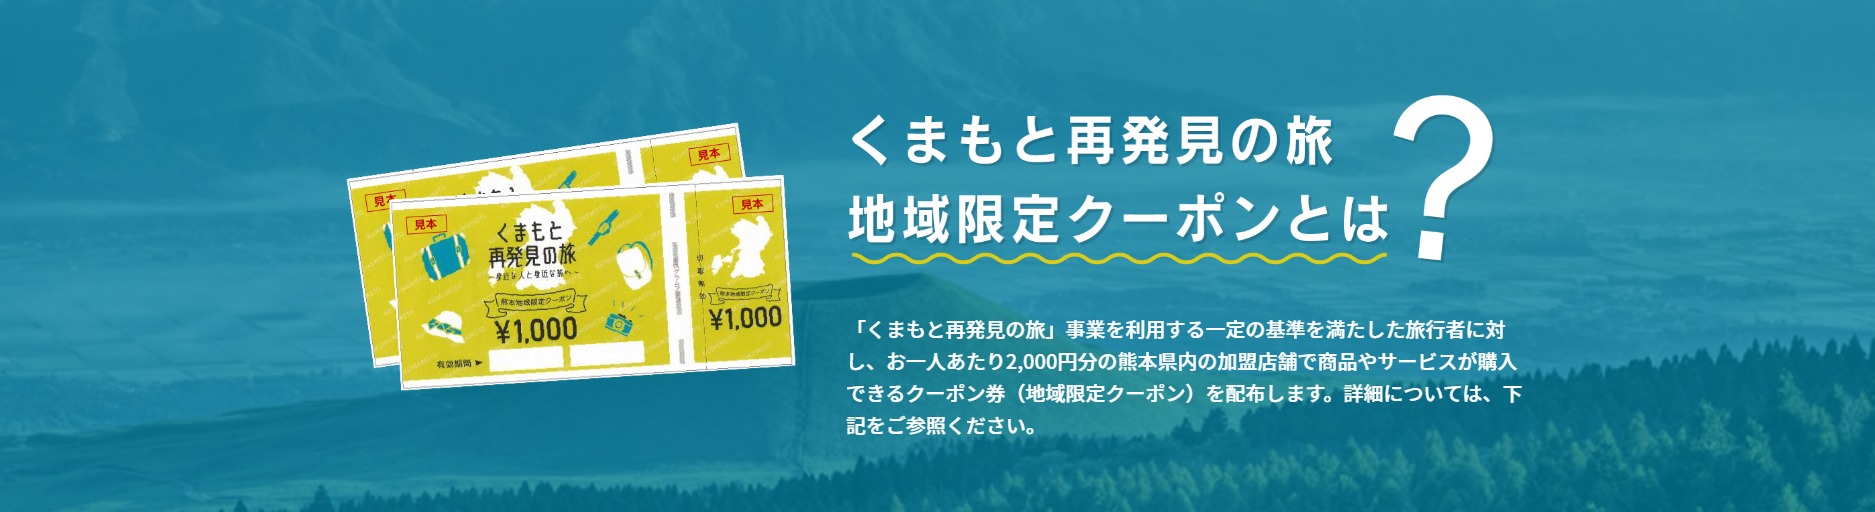 熊本県の全国旅行支援「くまもと再発見の旅」 熊本県民割・GoToトラベルのクーポンまとめ | ホテル・旅行クーポンメディア Airstair